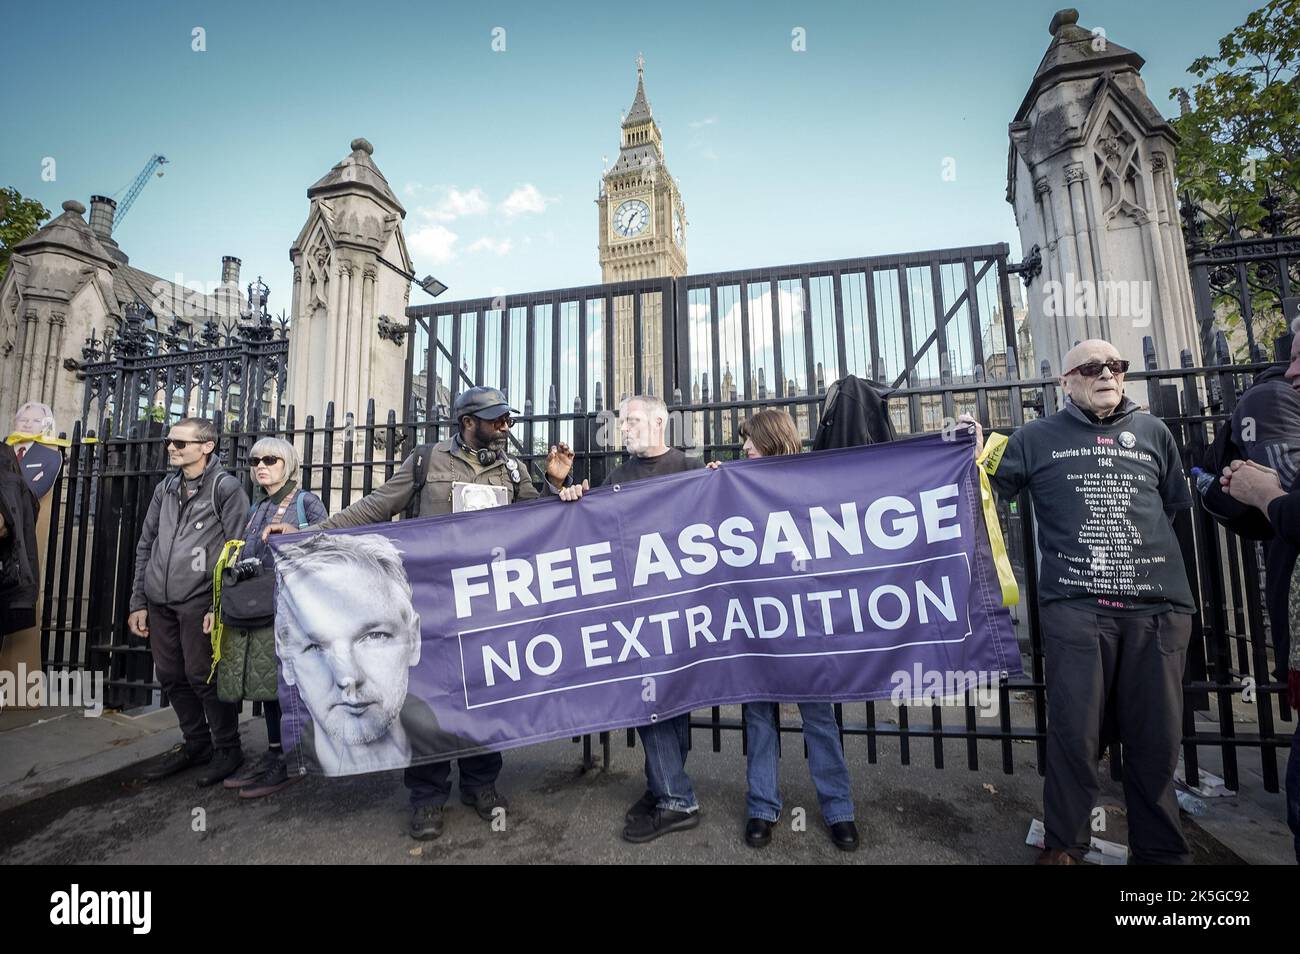 Londres, Reino Unido. 8th de octubre de 2022. Cadena humana libre de Assange. Cientos de partidarios de Julian Assange y de la Libertad de Prensa se reúnen para formar una cadena de protesta cerca de los edificios del Parlamento. Assange permanece en la prisión londinense Belmarsh, donde permanece detenido desde abril de 2019. Los abogados de Assange sostienen que “está siendo procesado y castigado por sus opiniones políticas”. Crédito: Guy Corbishley/Alamy Live News Foto de stock